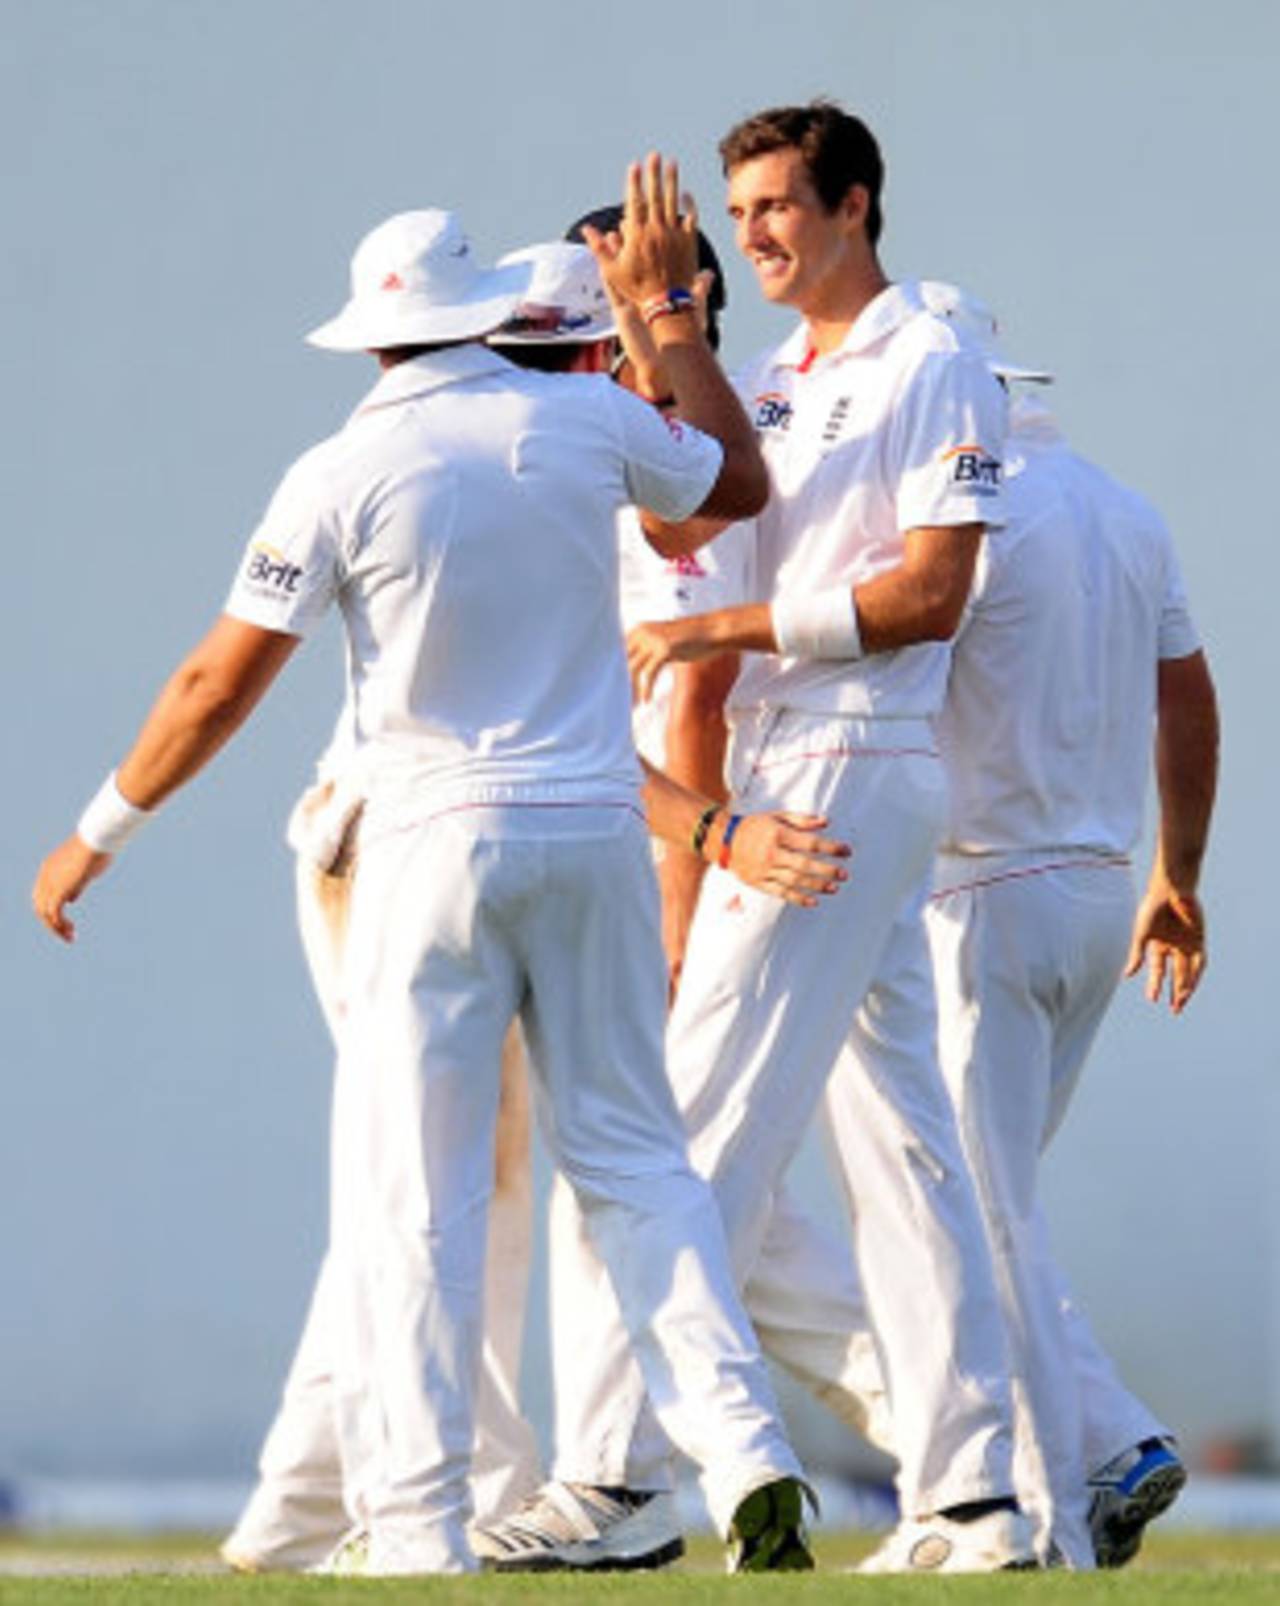 England players celebrate with Steven Finn after he removed Prasanna Jayawardene, Sri Lanka v England, 2nd Test, Colombo, 1st day, April 3, 2012